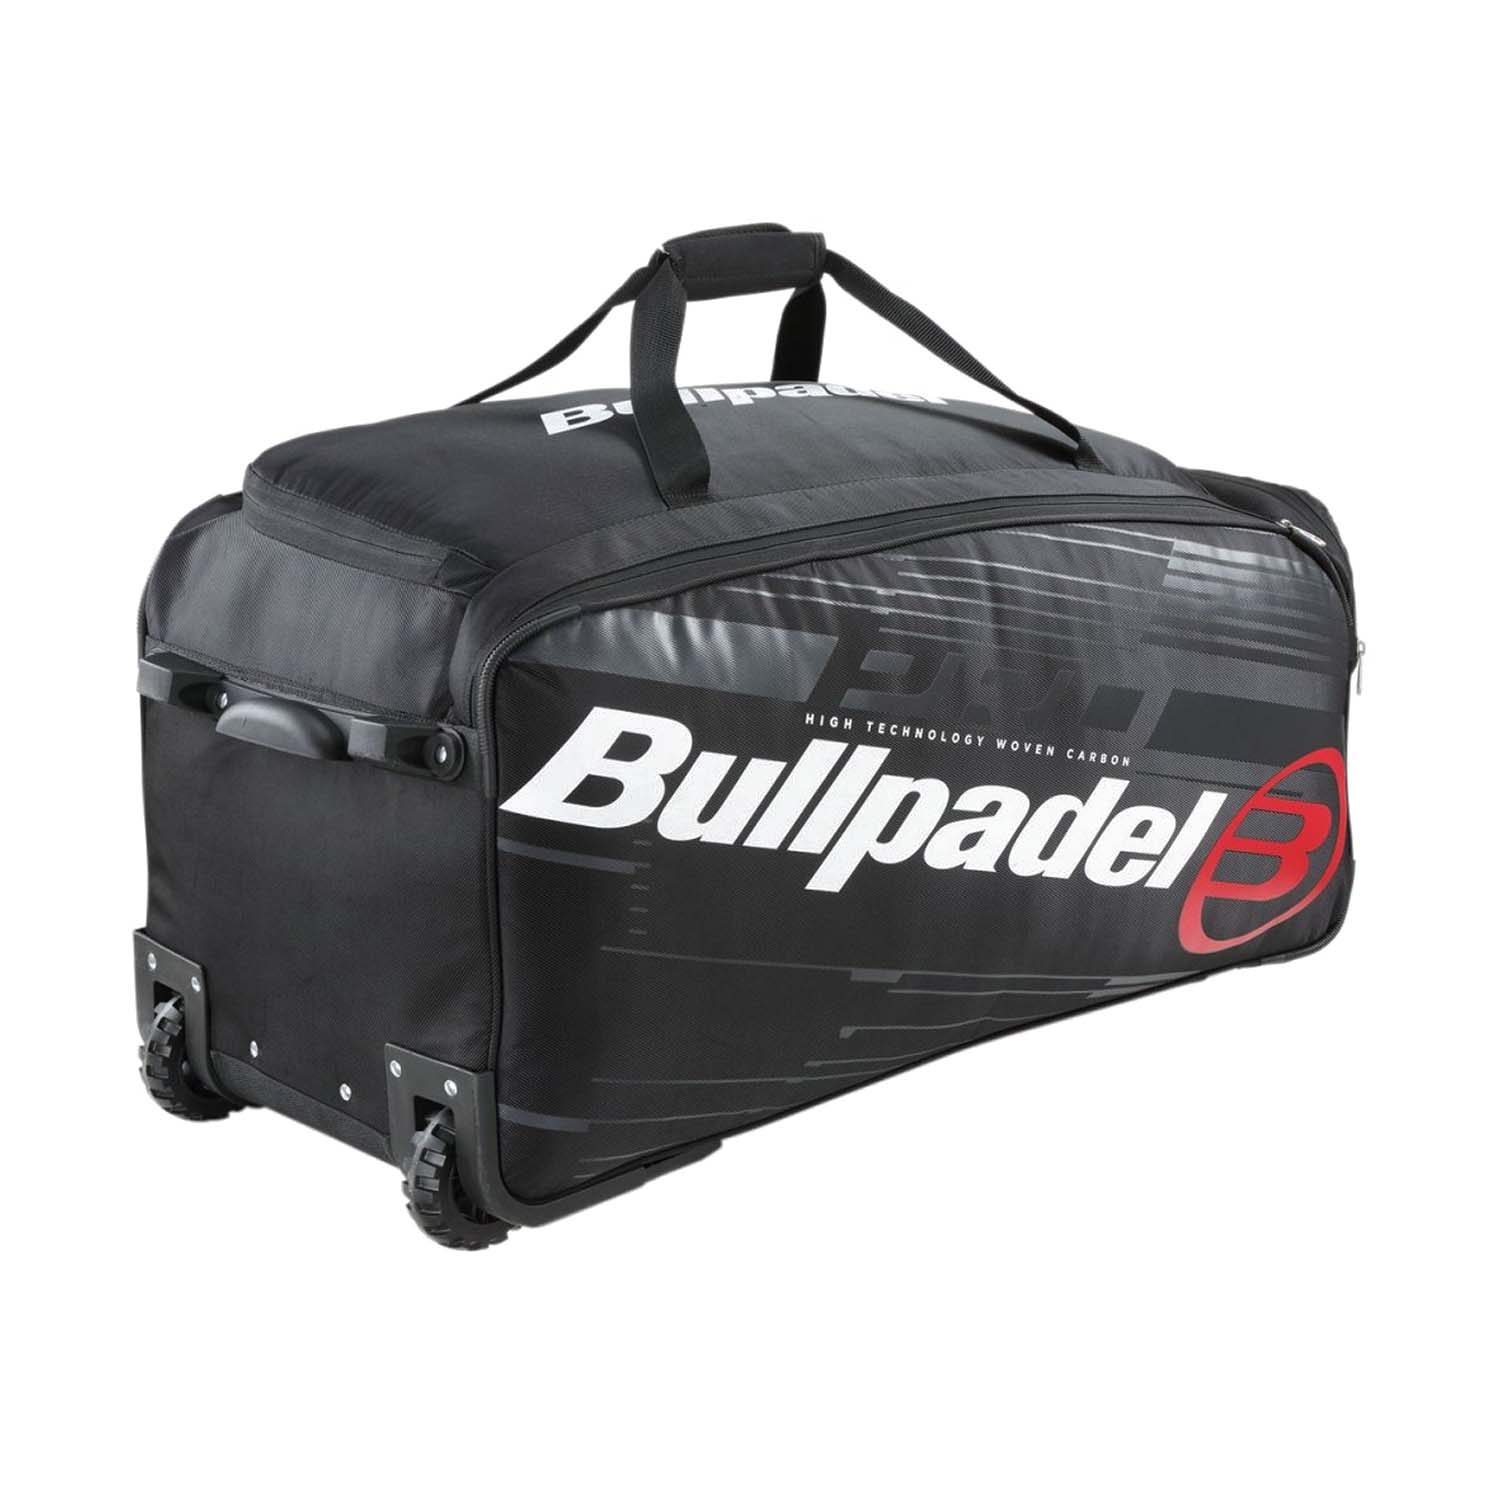 Bullpadel Pro Trolley - Black